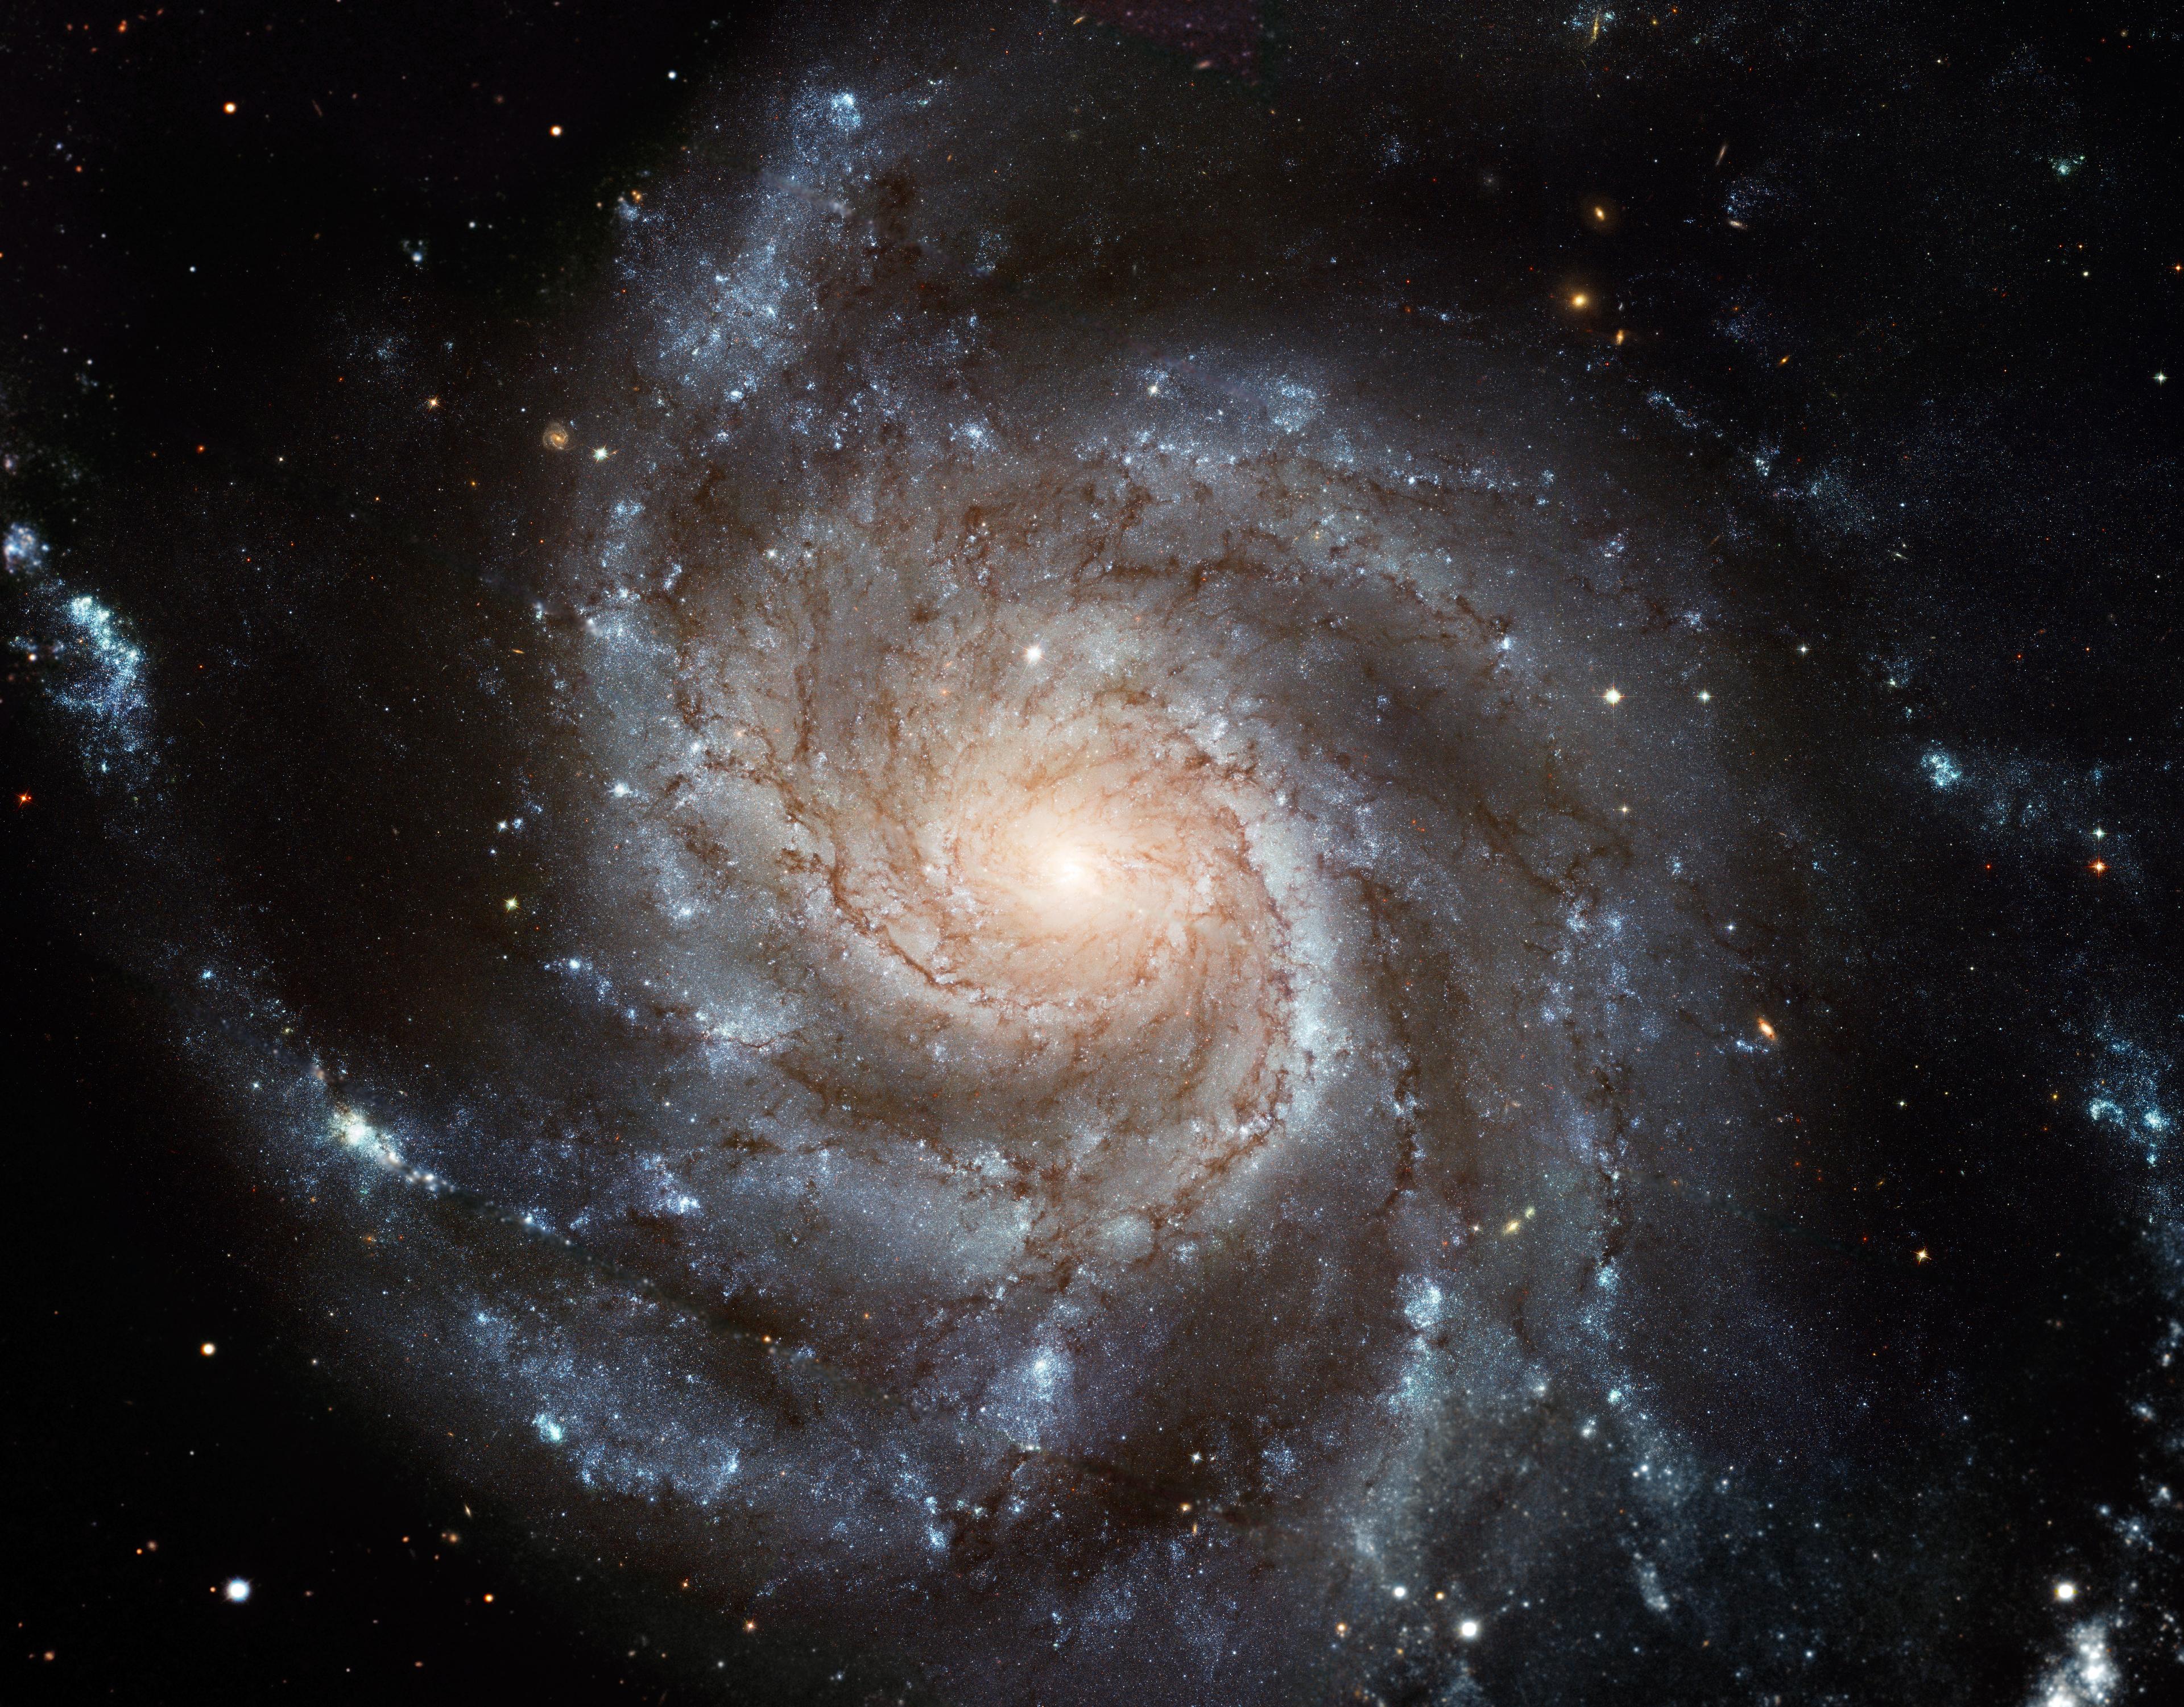 مجرة م101 الحلزونية الضخمة حادّة التفاصيل بقرصها المواجه لنا وأذرعها الملتفّة بنجومها وغبارها، مع بعض المجرات الخلفيّة، والتي يمكن رؤية بعضها مباشرةً من خلال م101 نفسها.